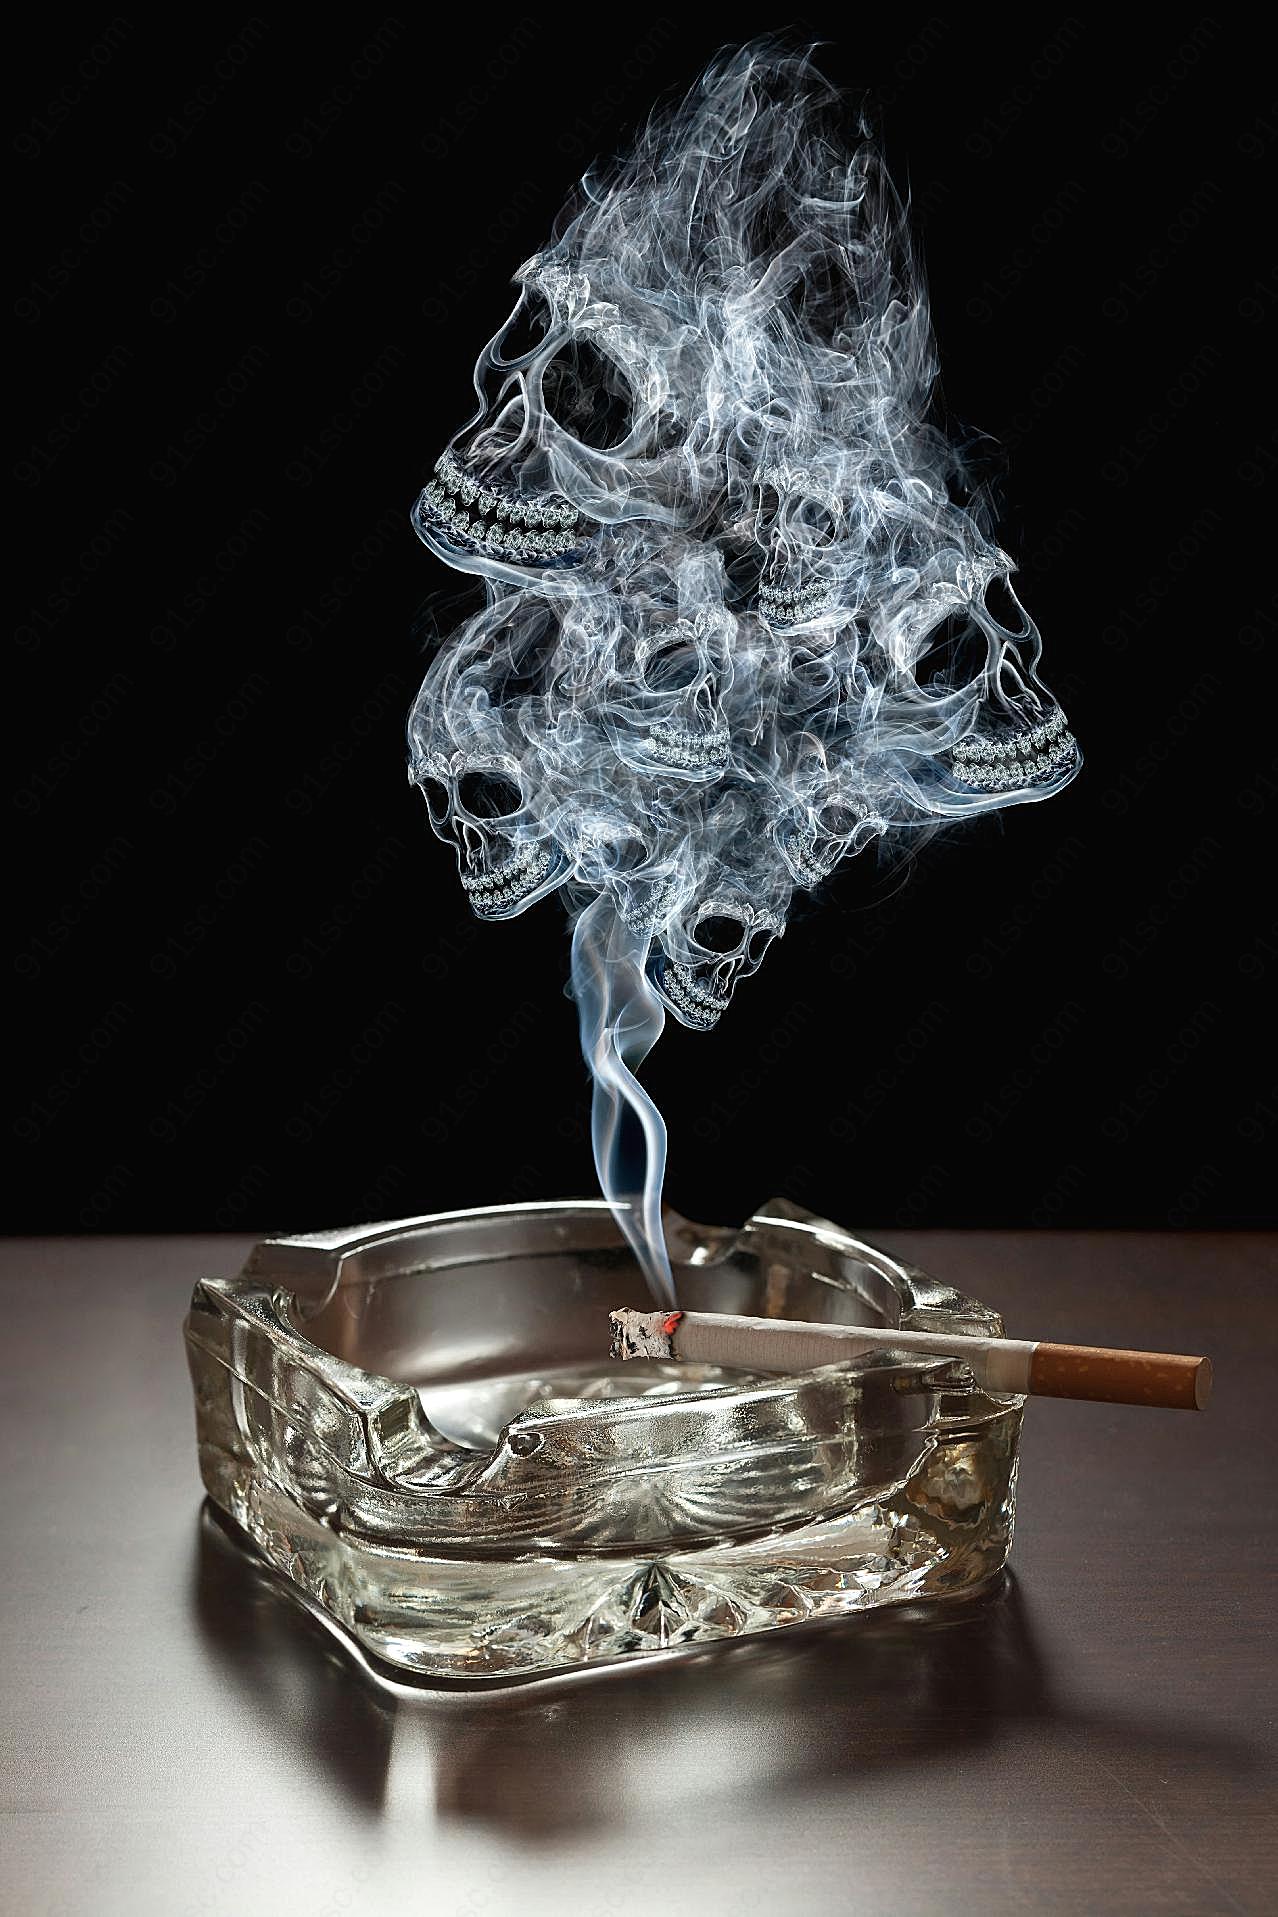 香烟烟雾骷髅形状图片摄影